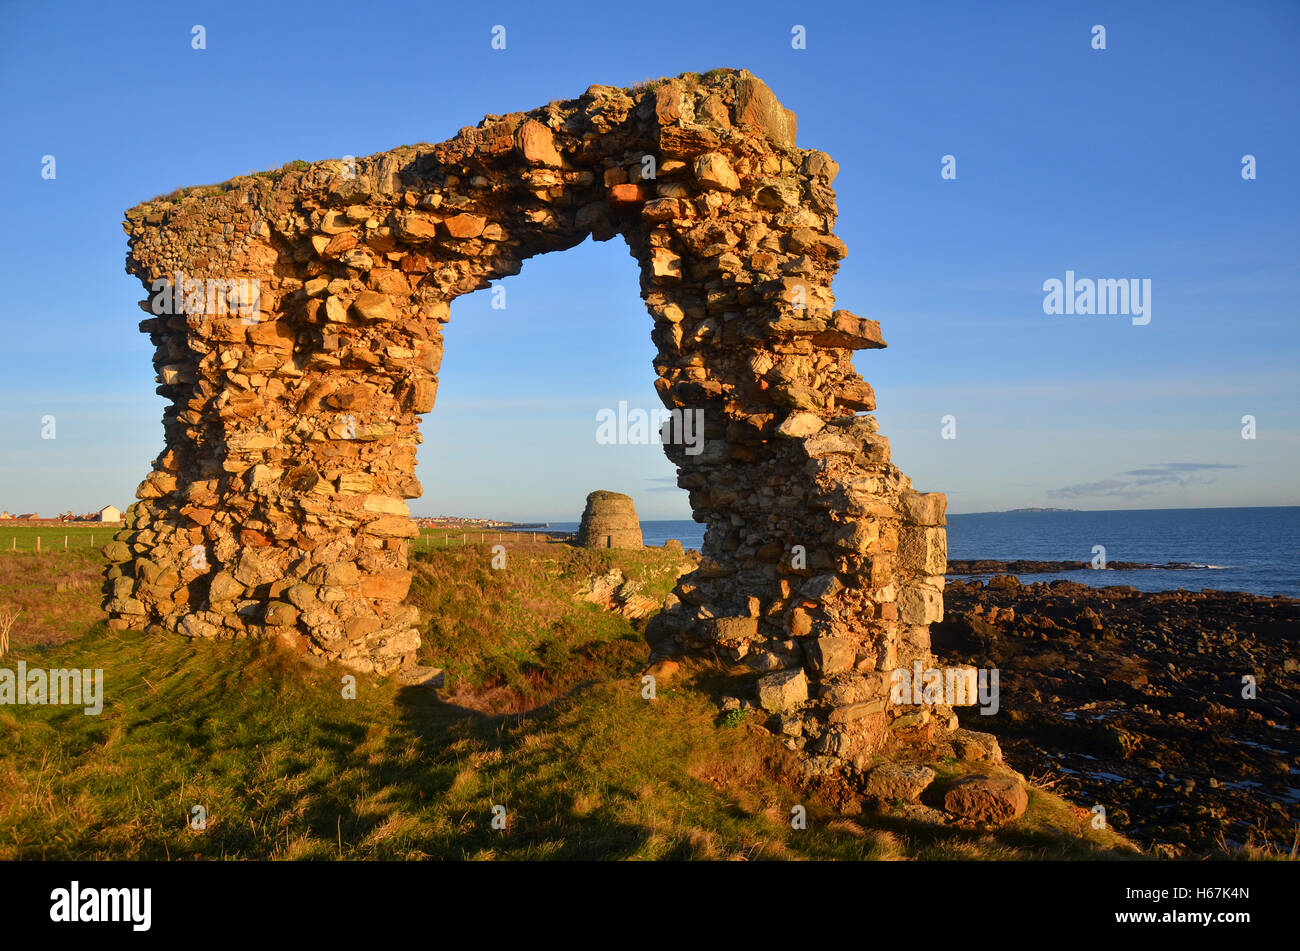 Newark doocot / dovecot vicino a St Monans, Fife, Scozia, come visto attraverso una rovina arcata in pietra. Foto Stock